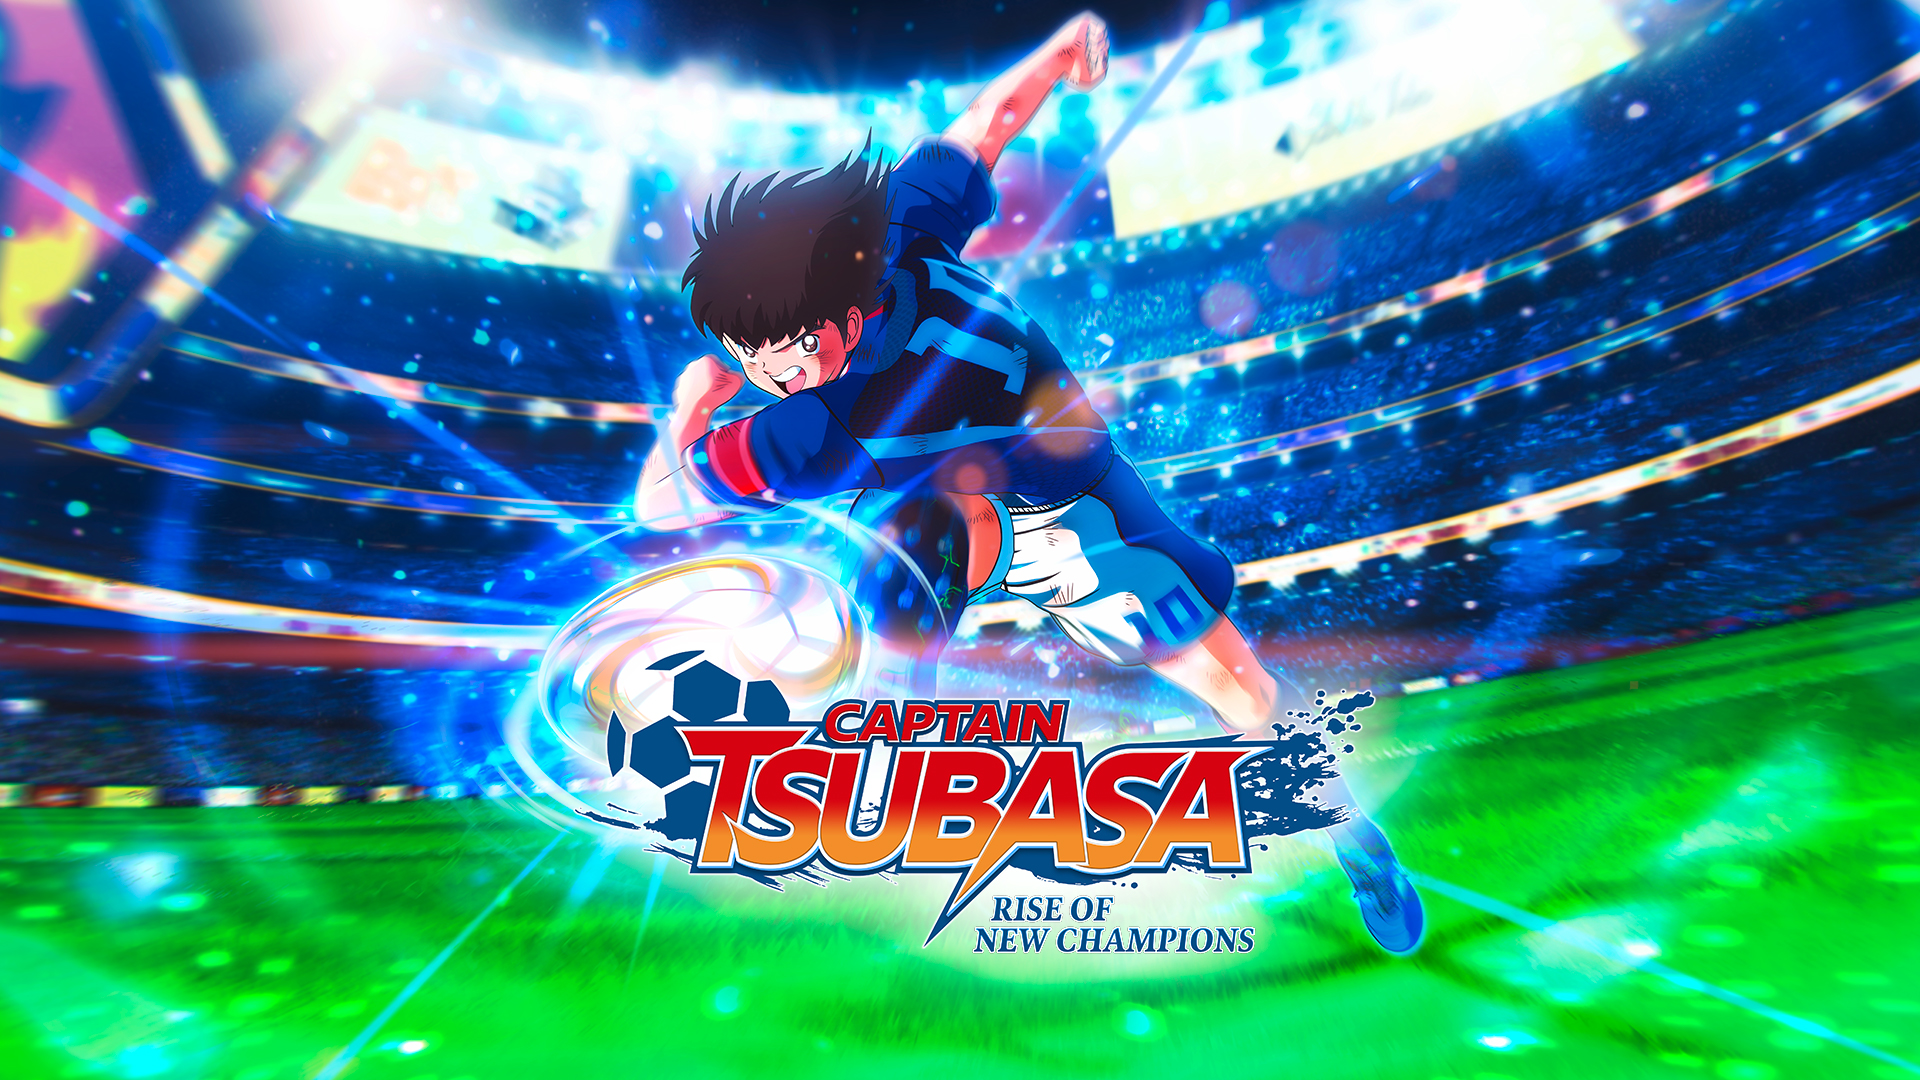 Captain Tsubasa Rise of New Champions shipments and digital sales 500,000